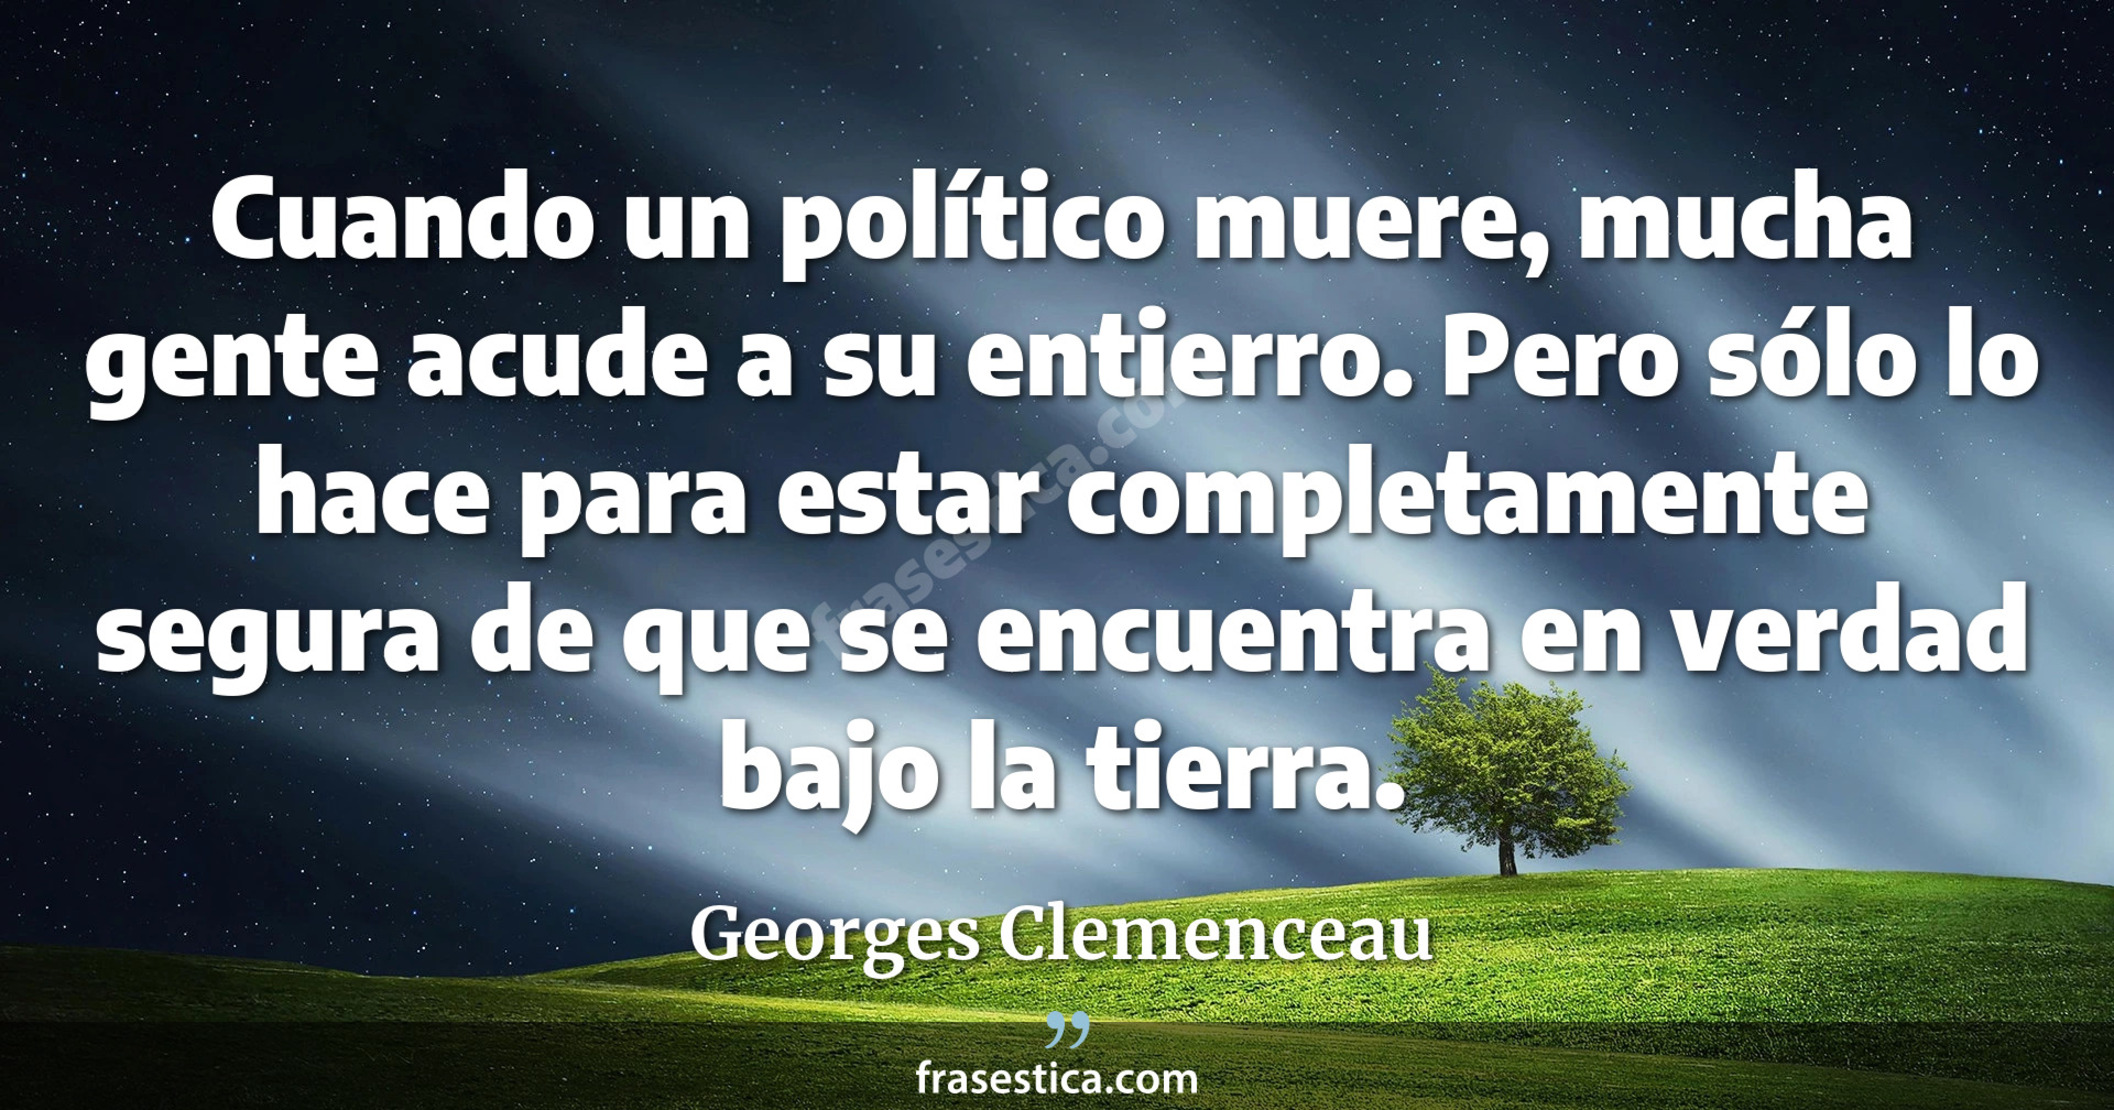 Cuando un político muere, mucha gente acude a su entierro. Pero sólo lo hace para estar completamente segura de que se encuentra en verdad bajo la tierra. - Georges Clemenceau